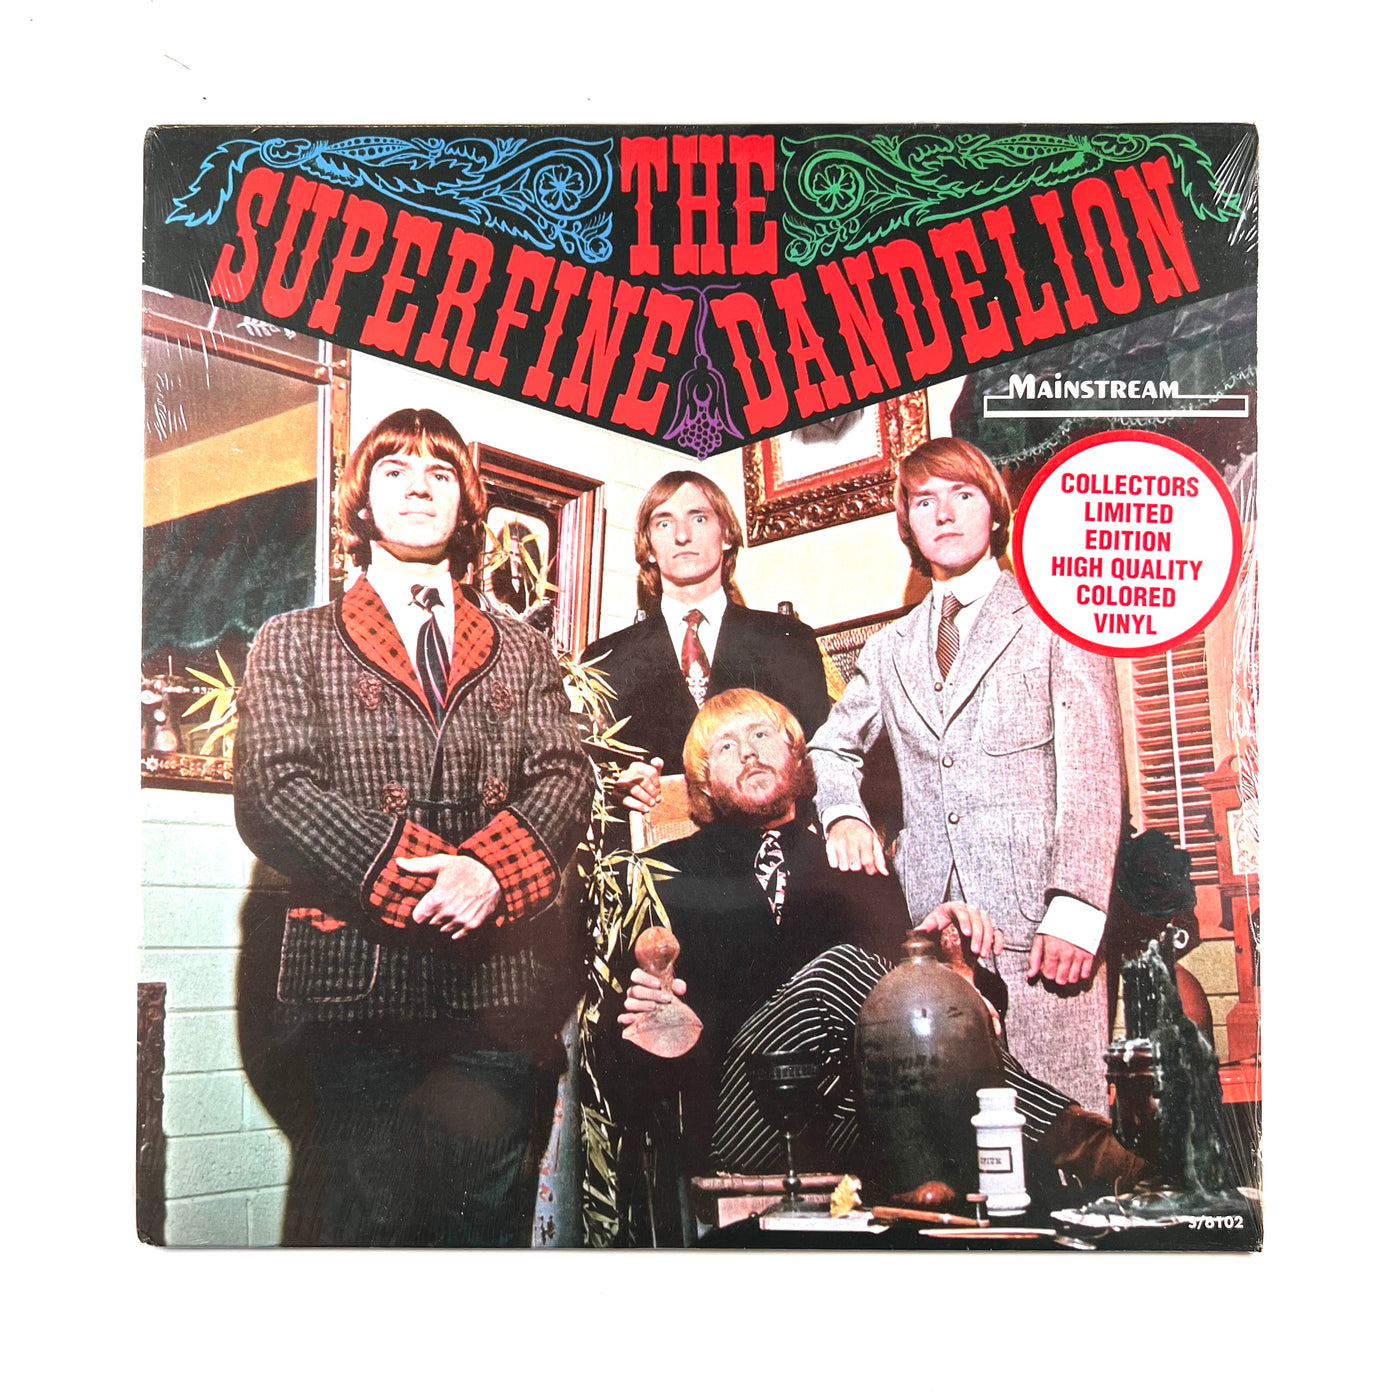 The Superfine Dandelion - The Superfine Dandelion - 2009 Reissue